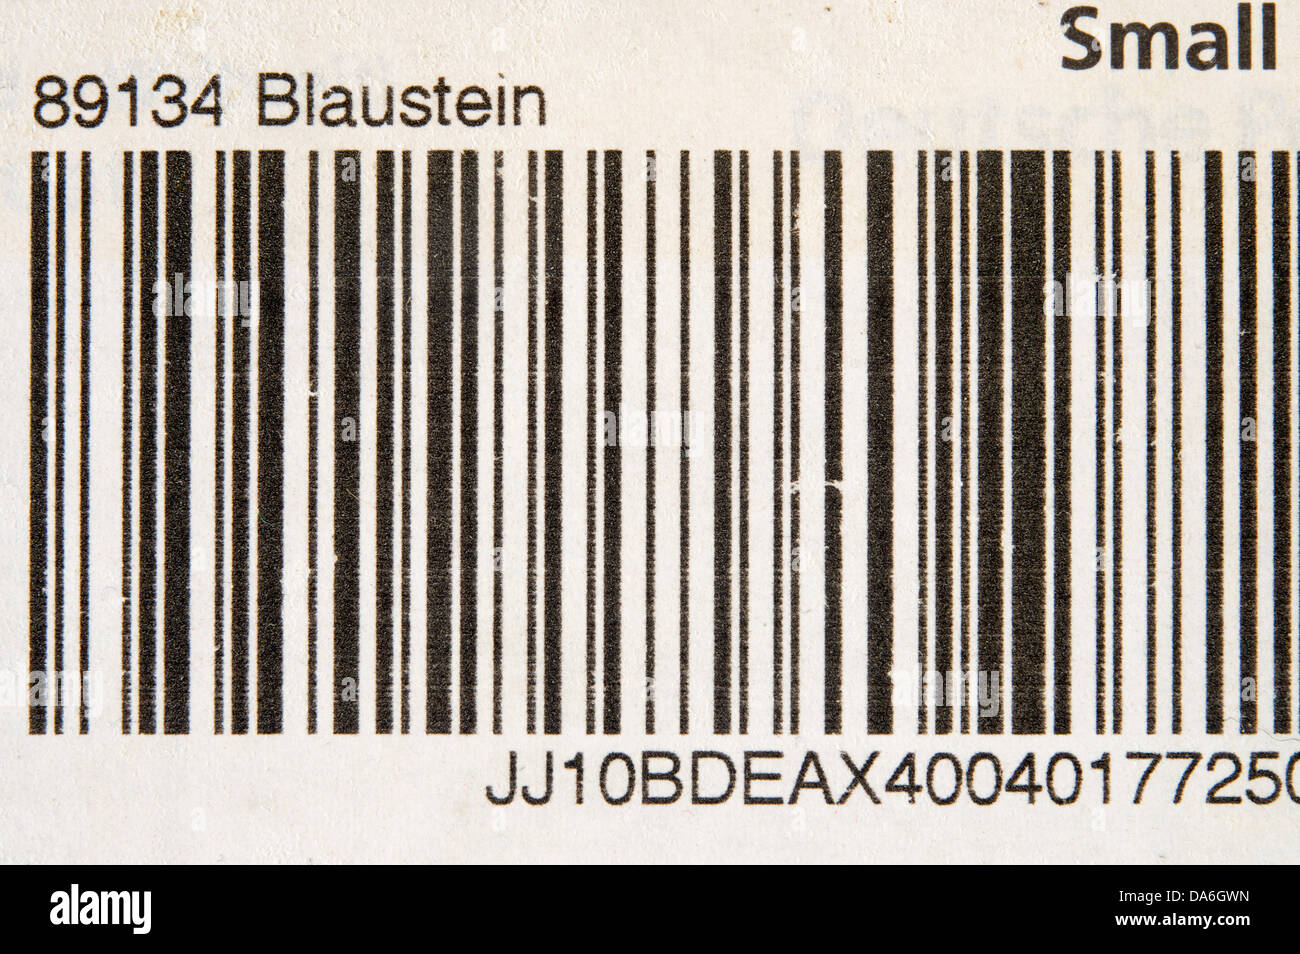 DHL parcel etichetta con un codice a barre Foto Stock